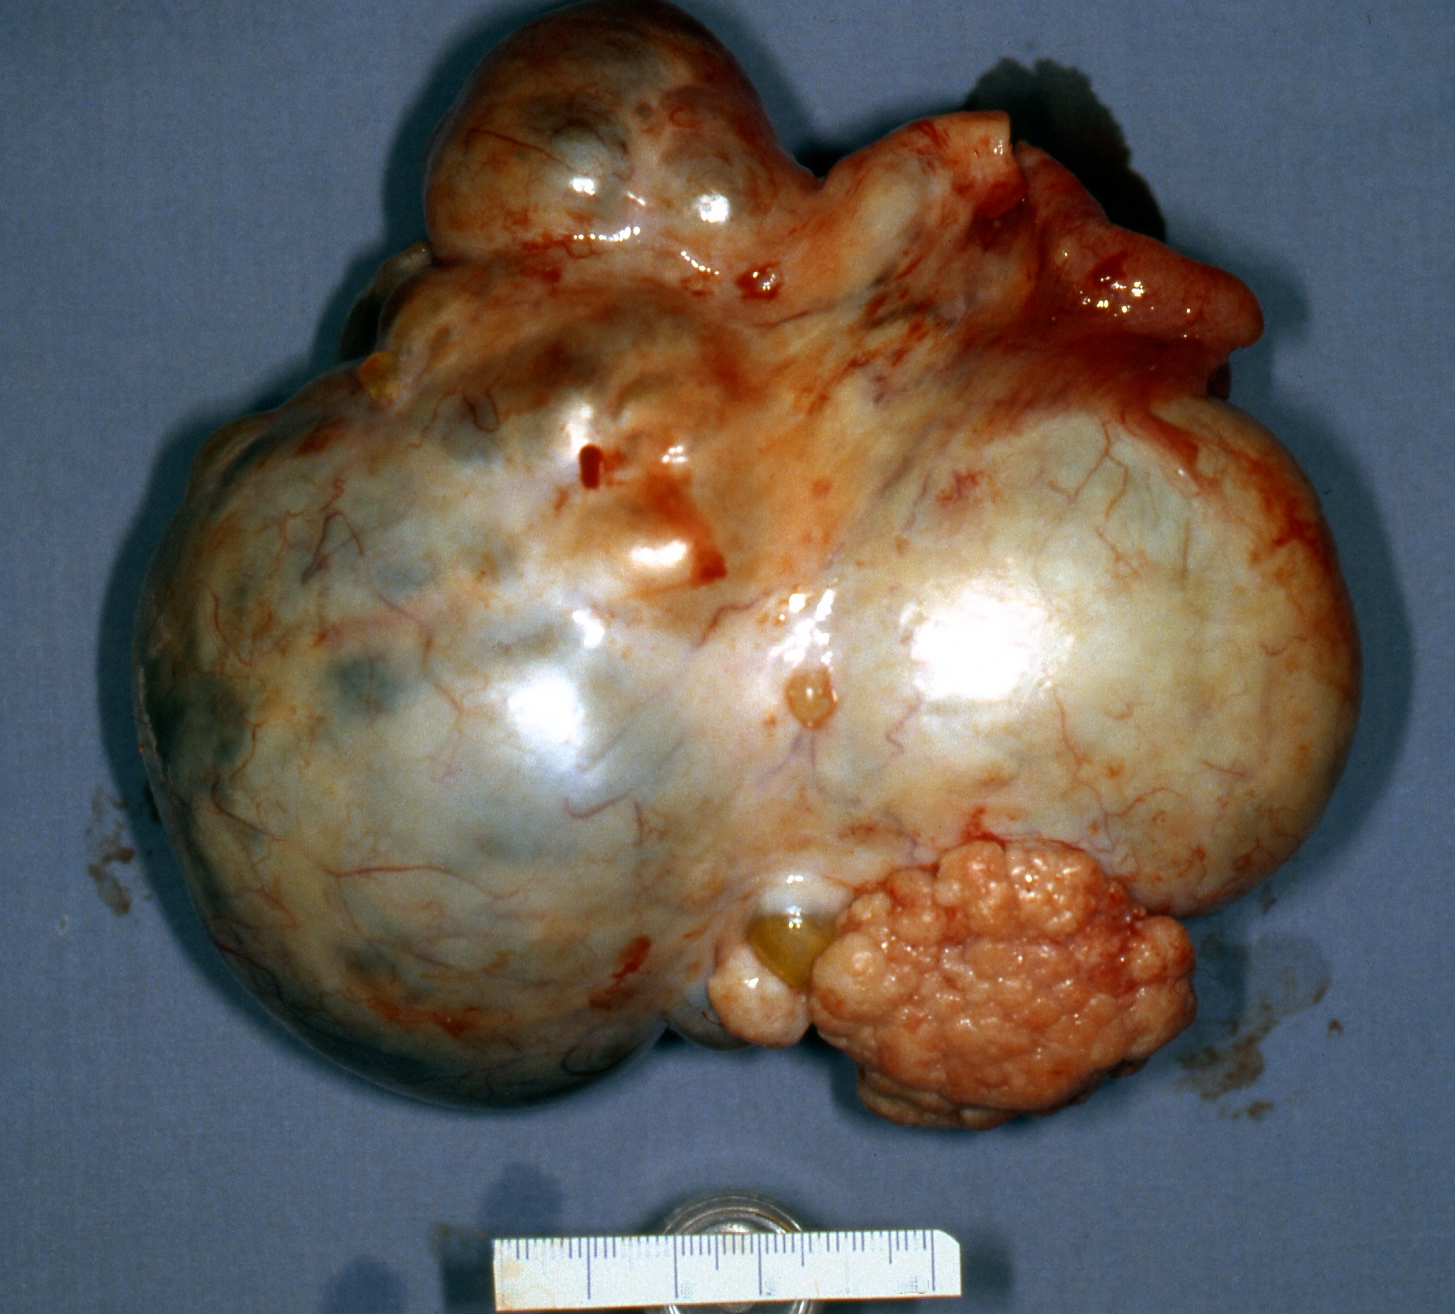 cancer ovarian neoplasm